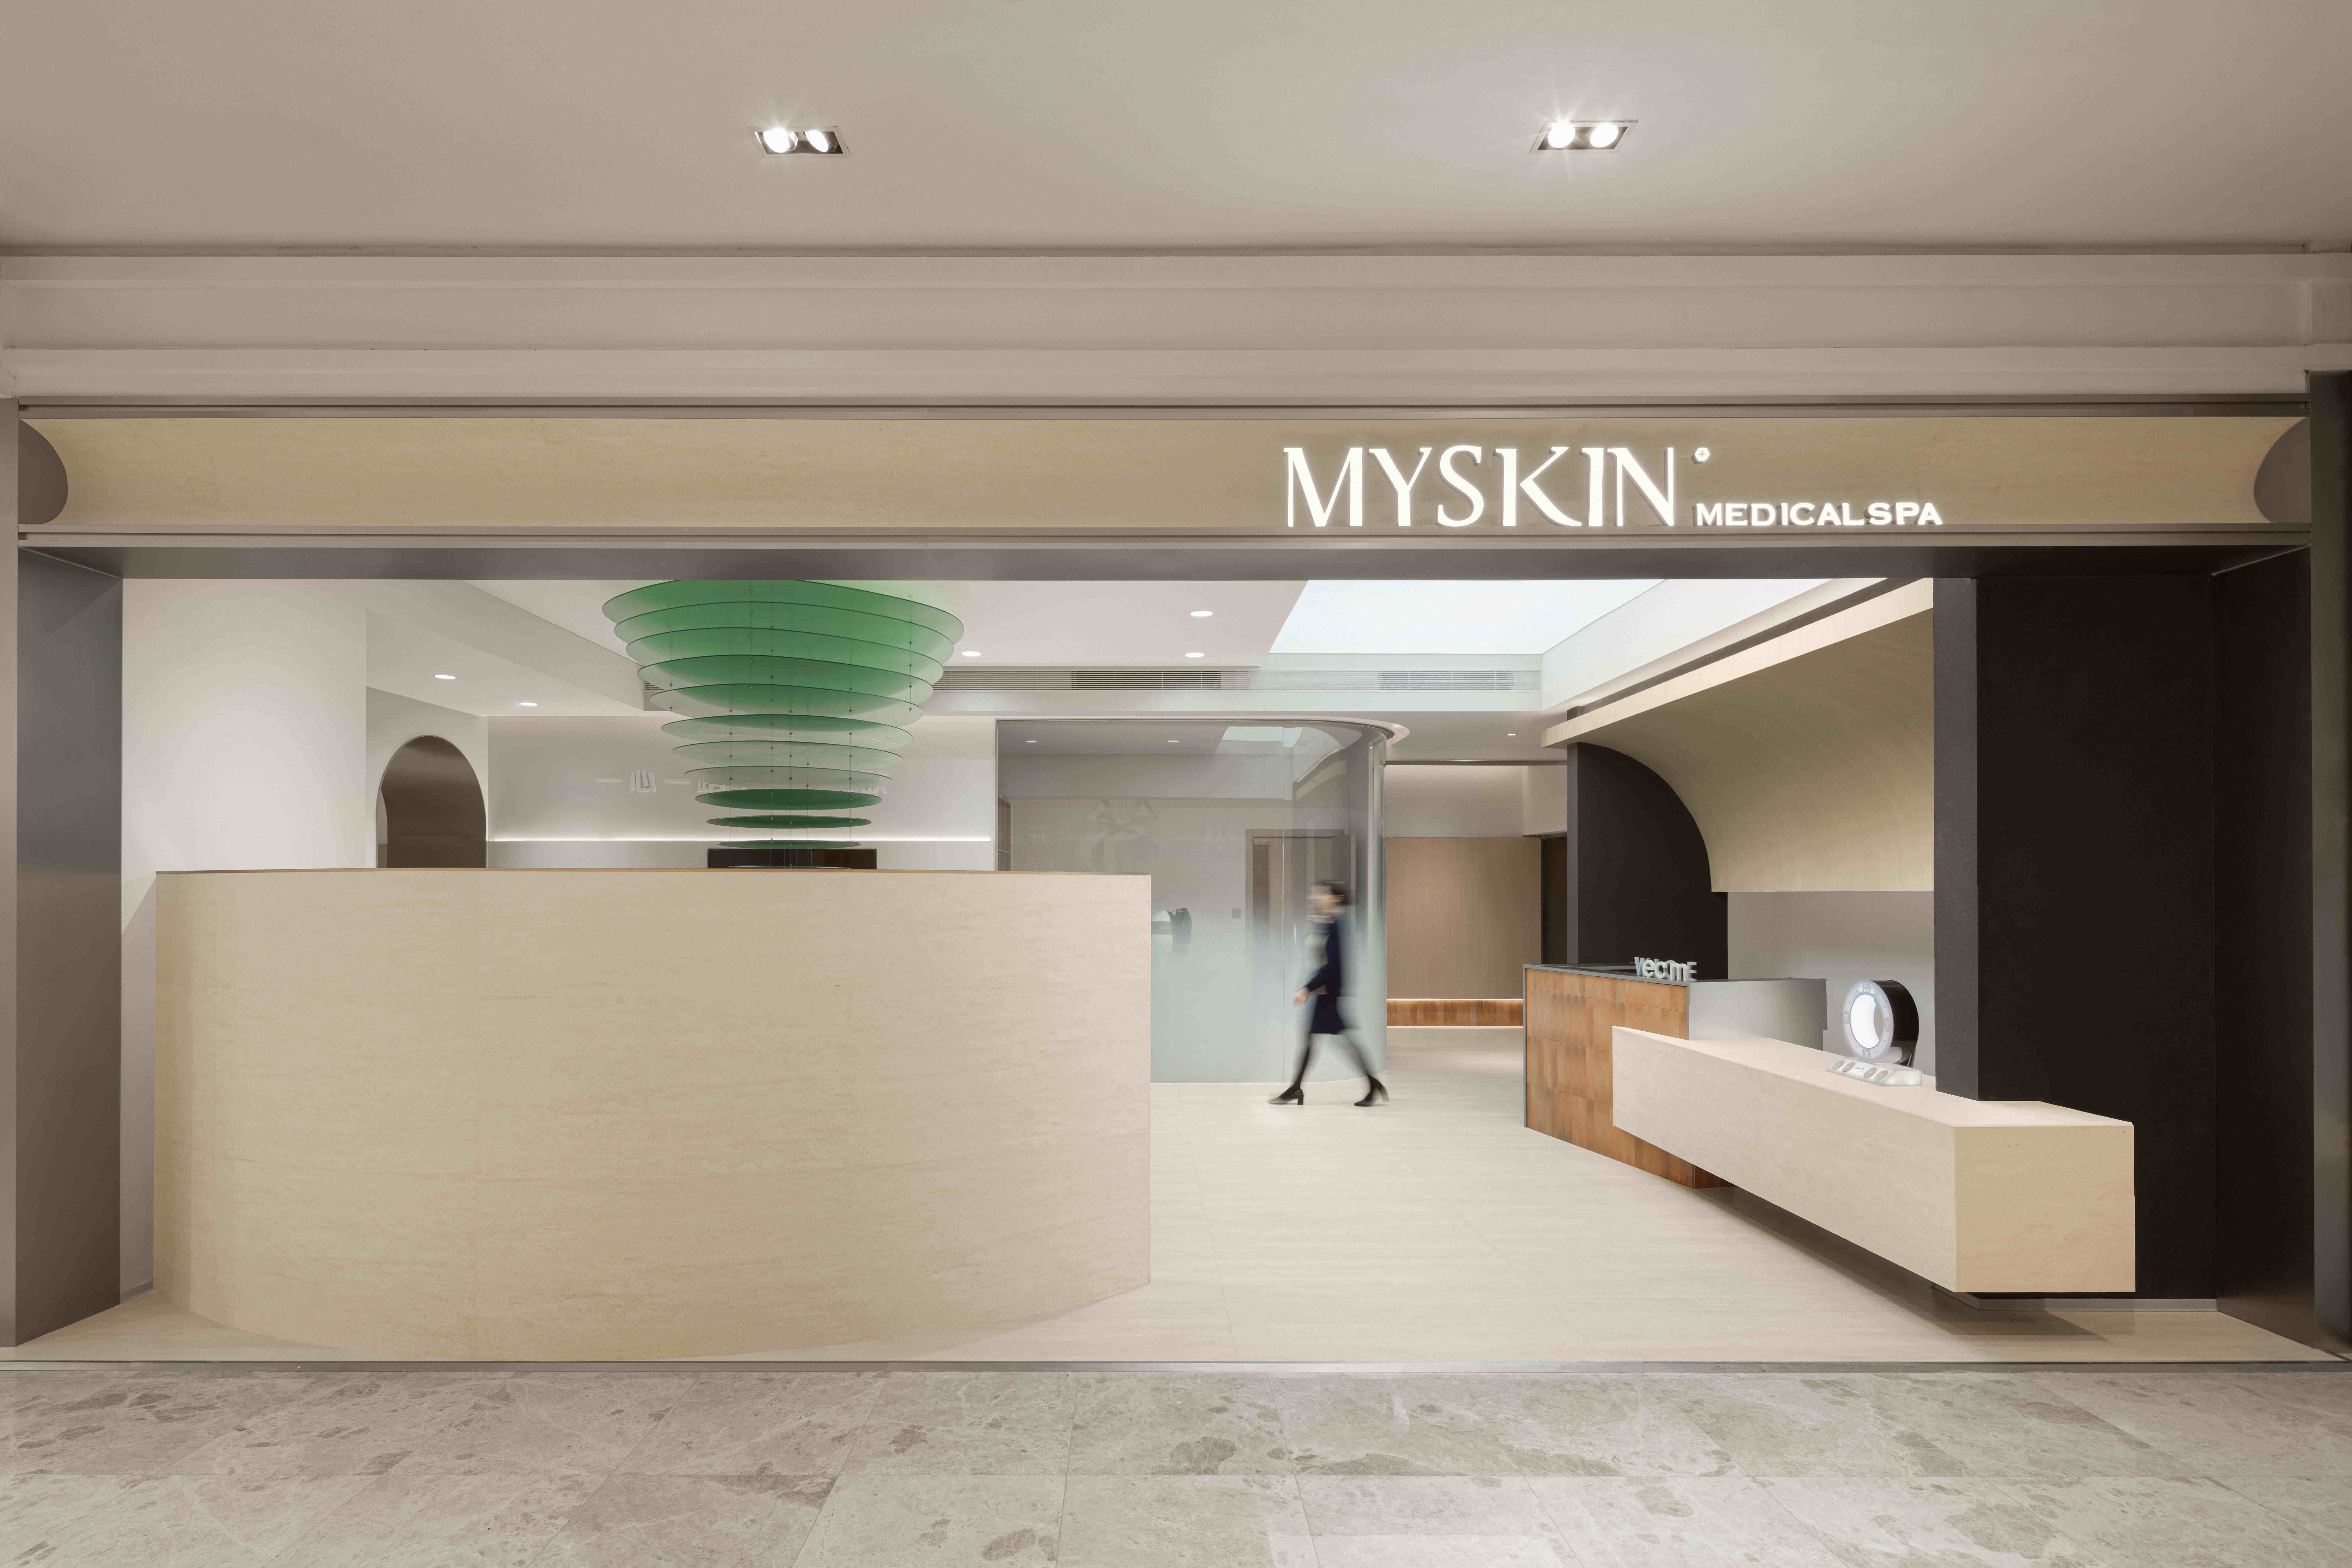 MYSKIN是一家皮肤管理中心。自然和时间总会留下痕迹，以科技和护理进行滋养疗愈。空间设计也不是刻意为之，是放弃“满溢”的灵感，不经意之间聚焦在“恰到好处”，从...